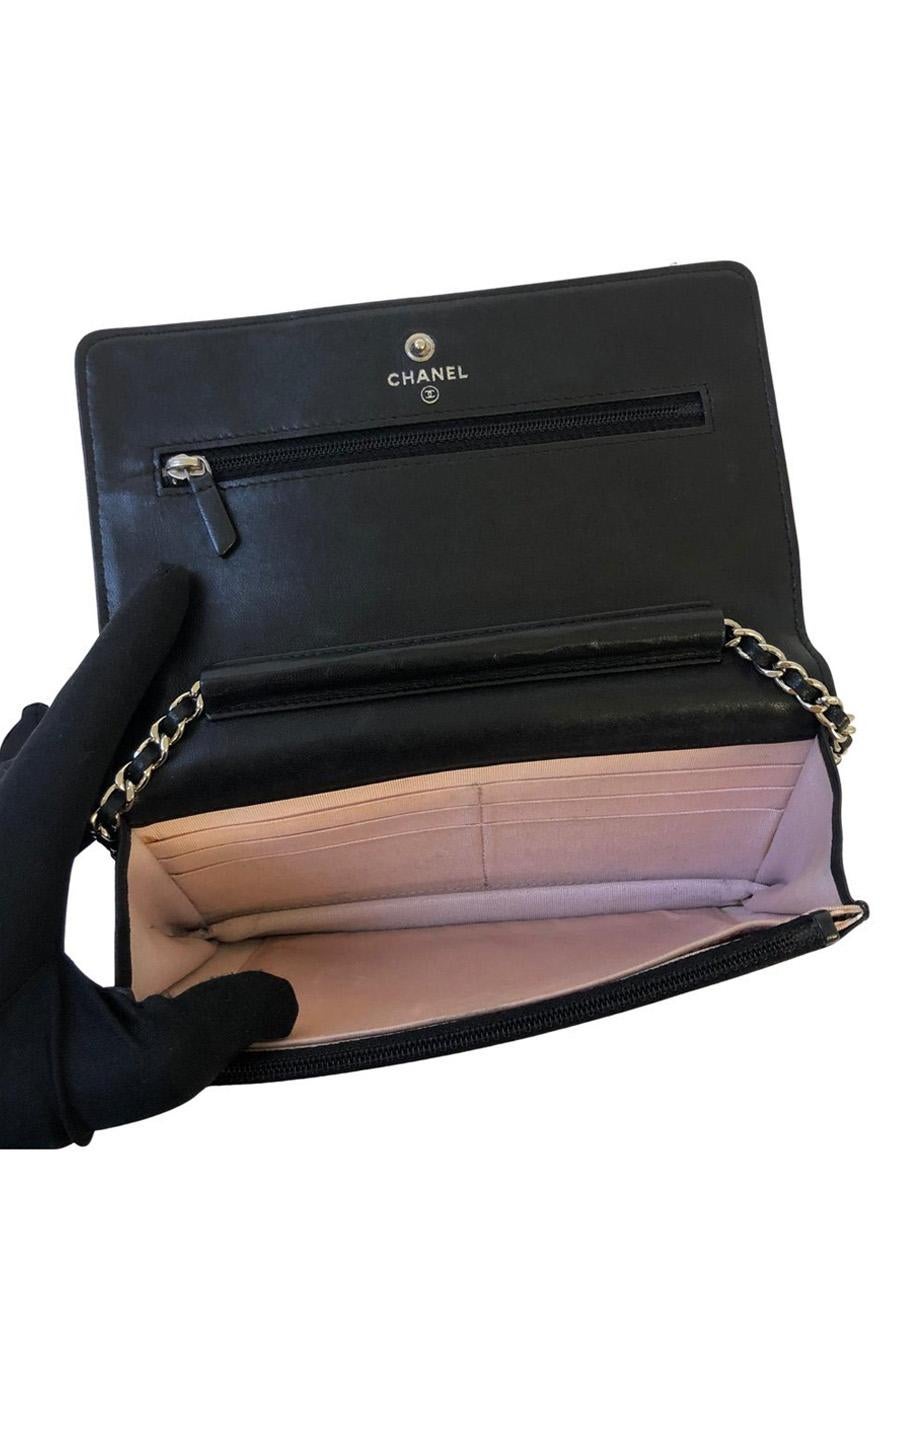 Women's Chanel Wallet on Chain (WOC) in black lambskin leather For Sale